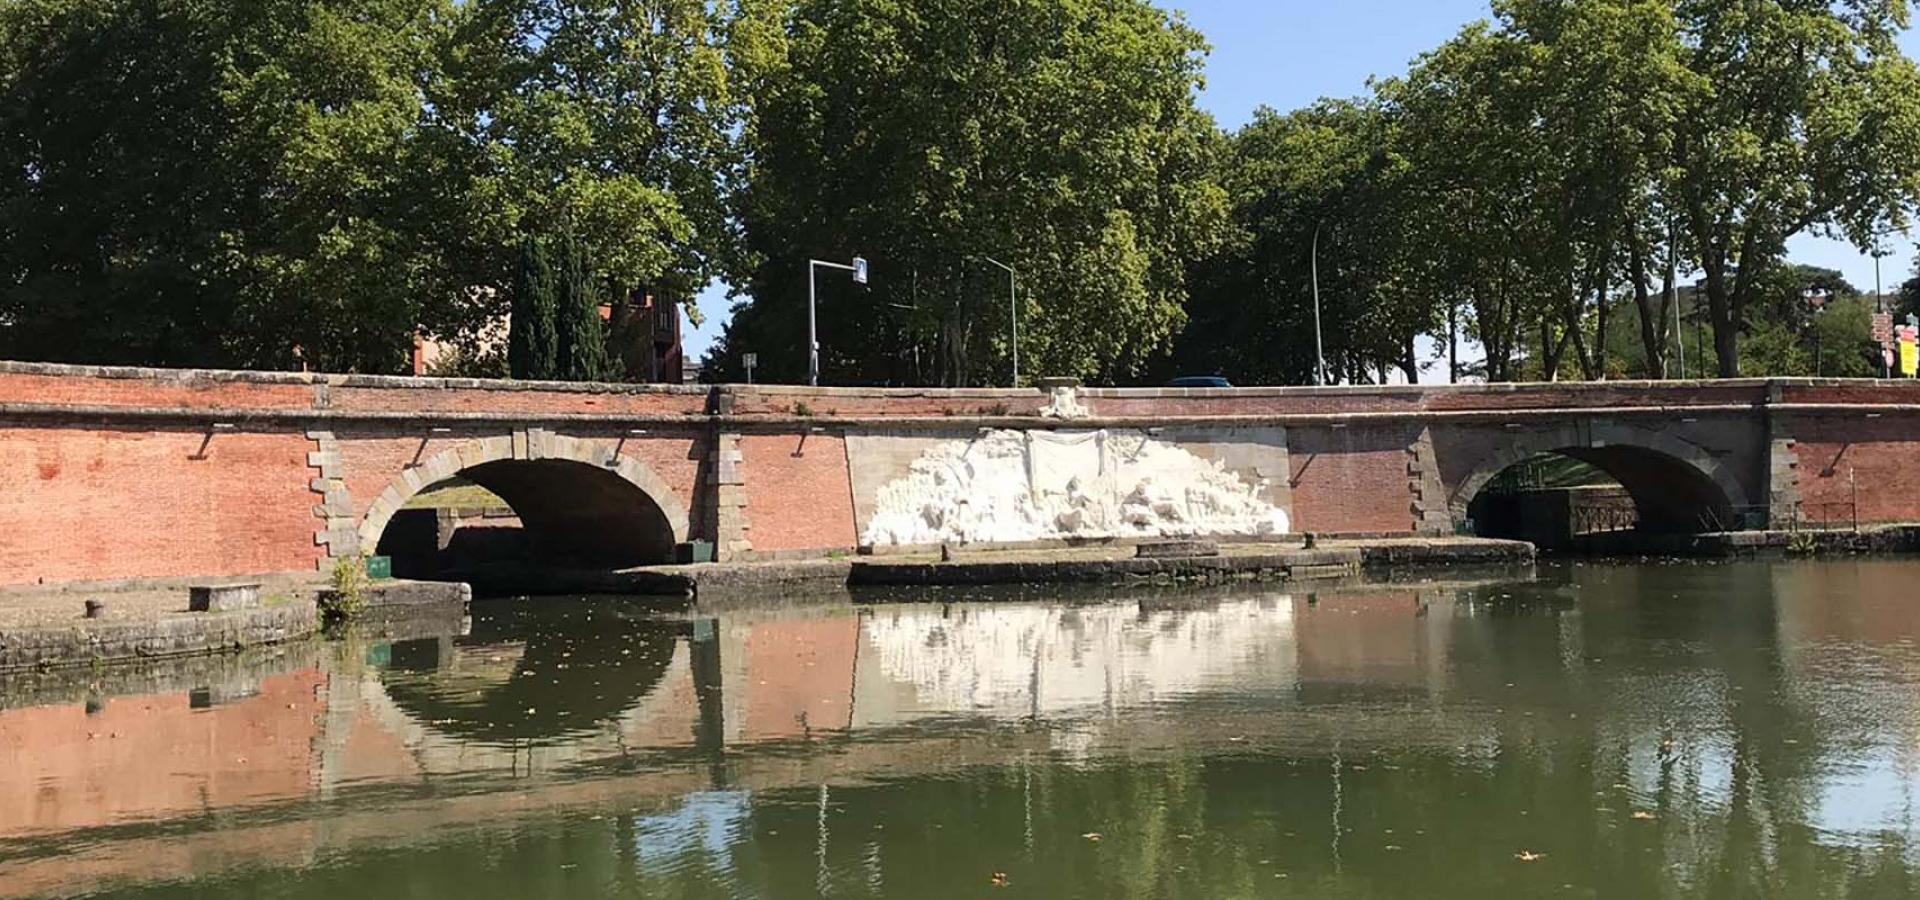 Décor pour votre tournage, les ponts Jumeaux à Toulouse